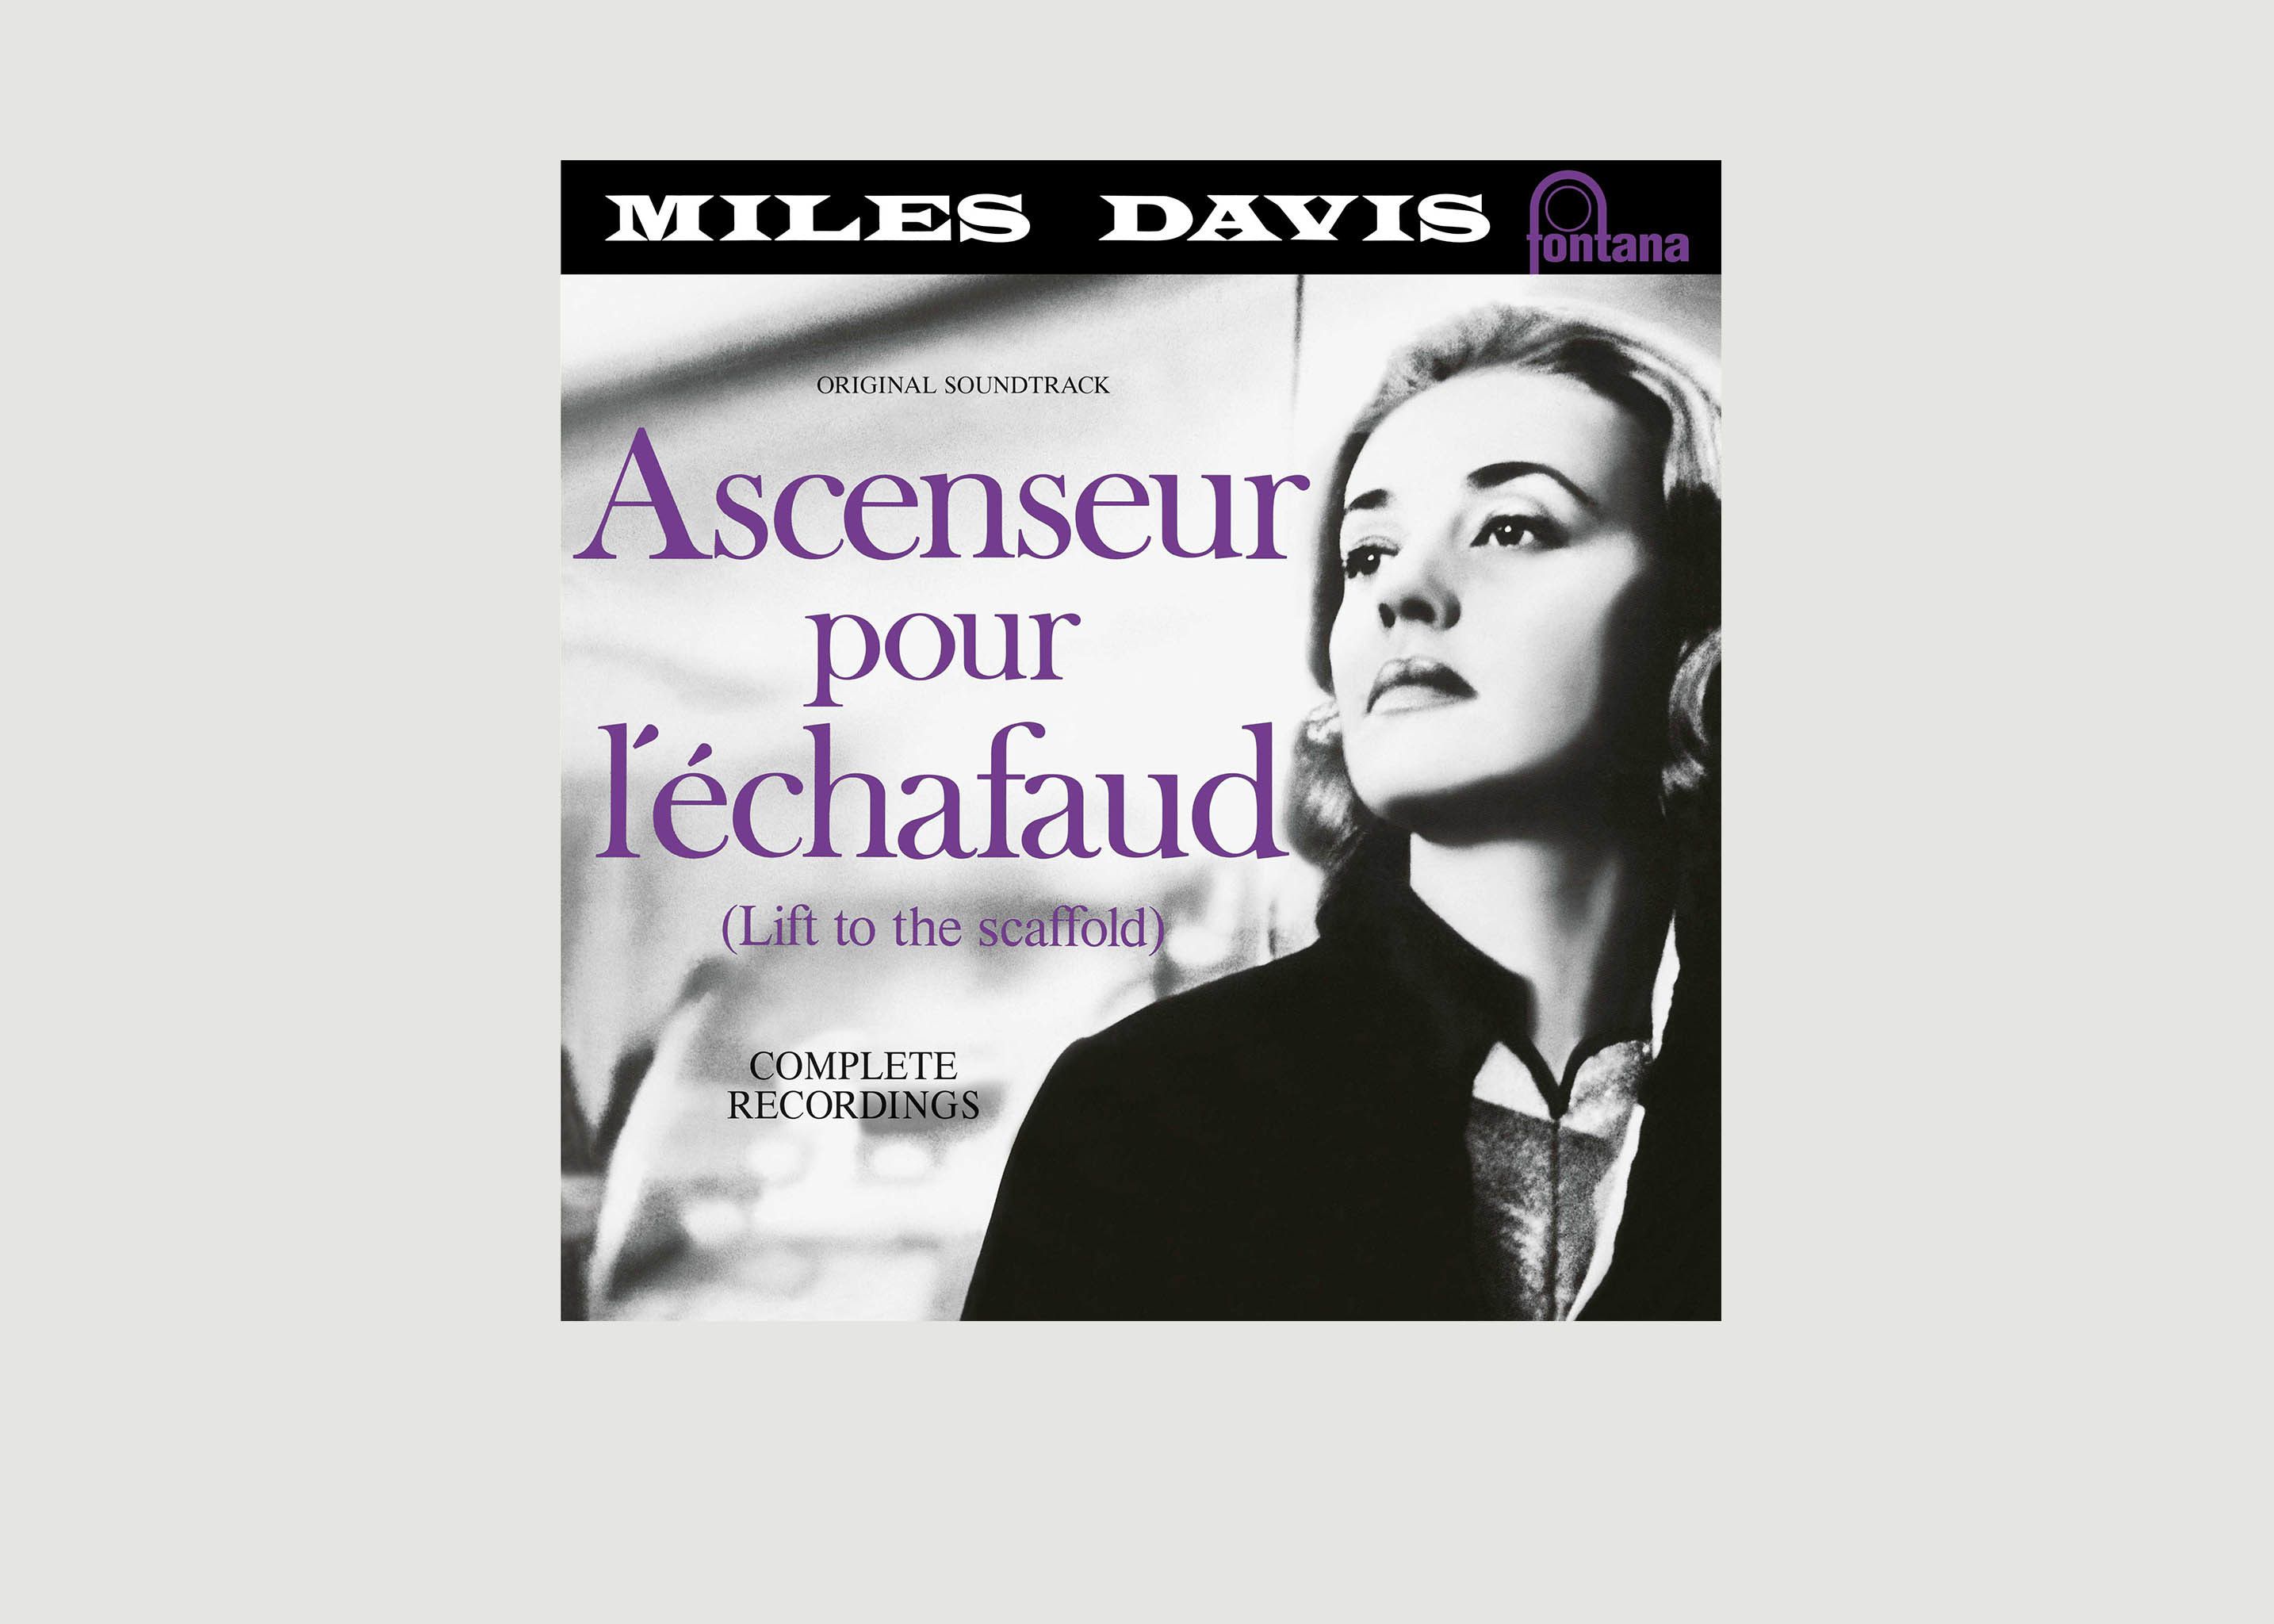 Ascenseur Pour L'Echafaud - Miles Davis - La vinyl-thèque idéale